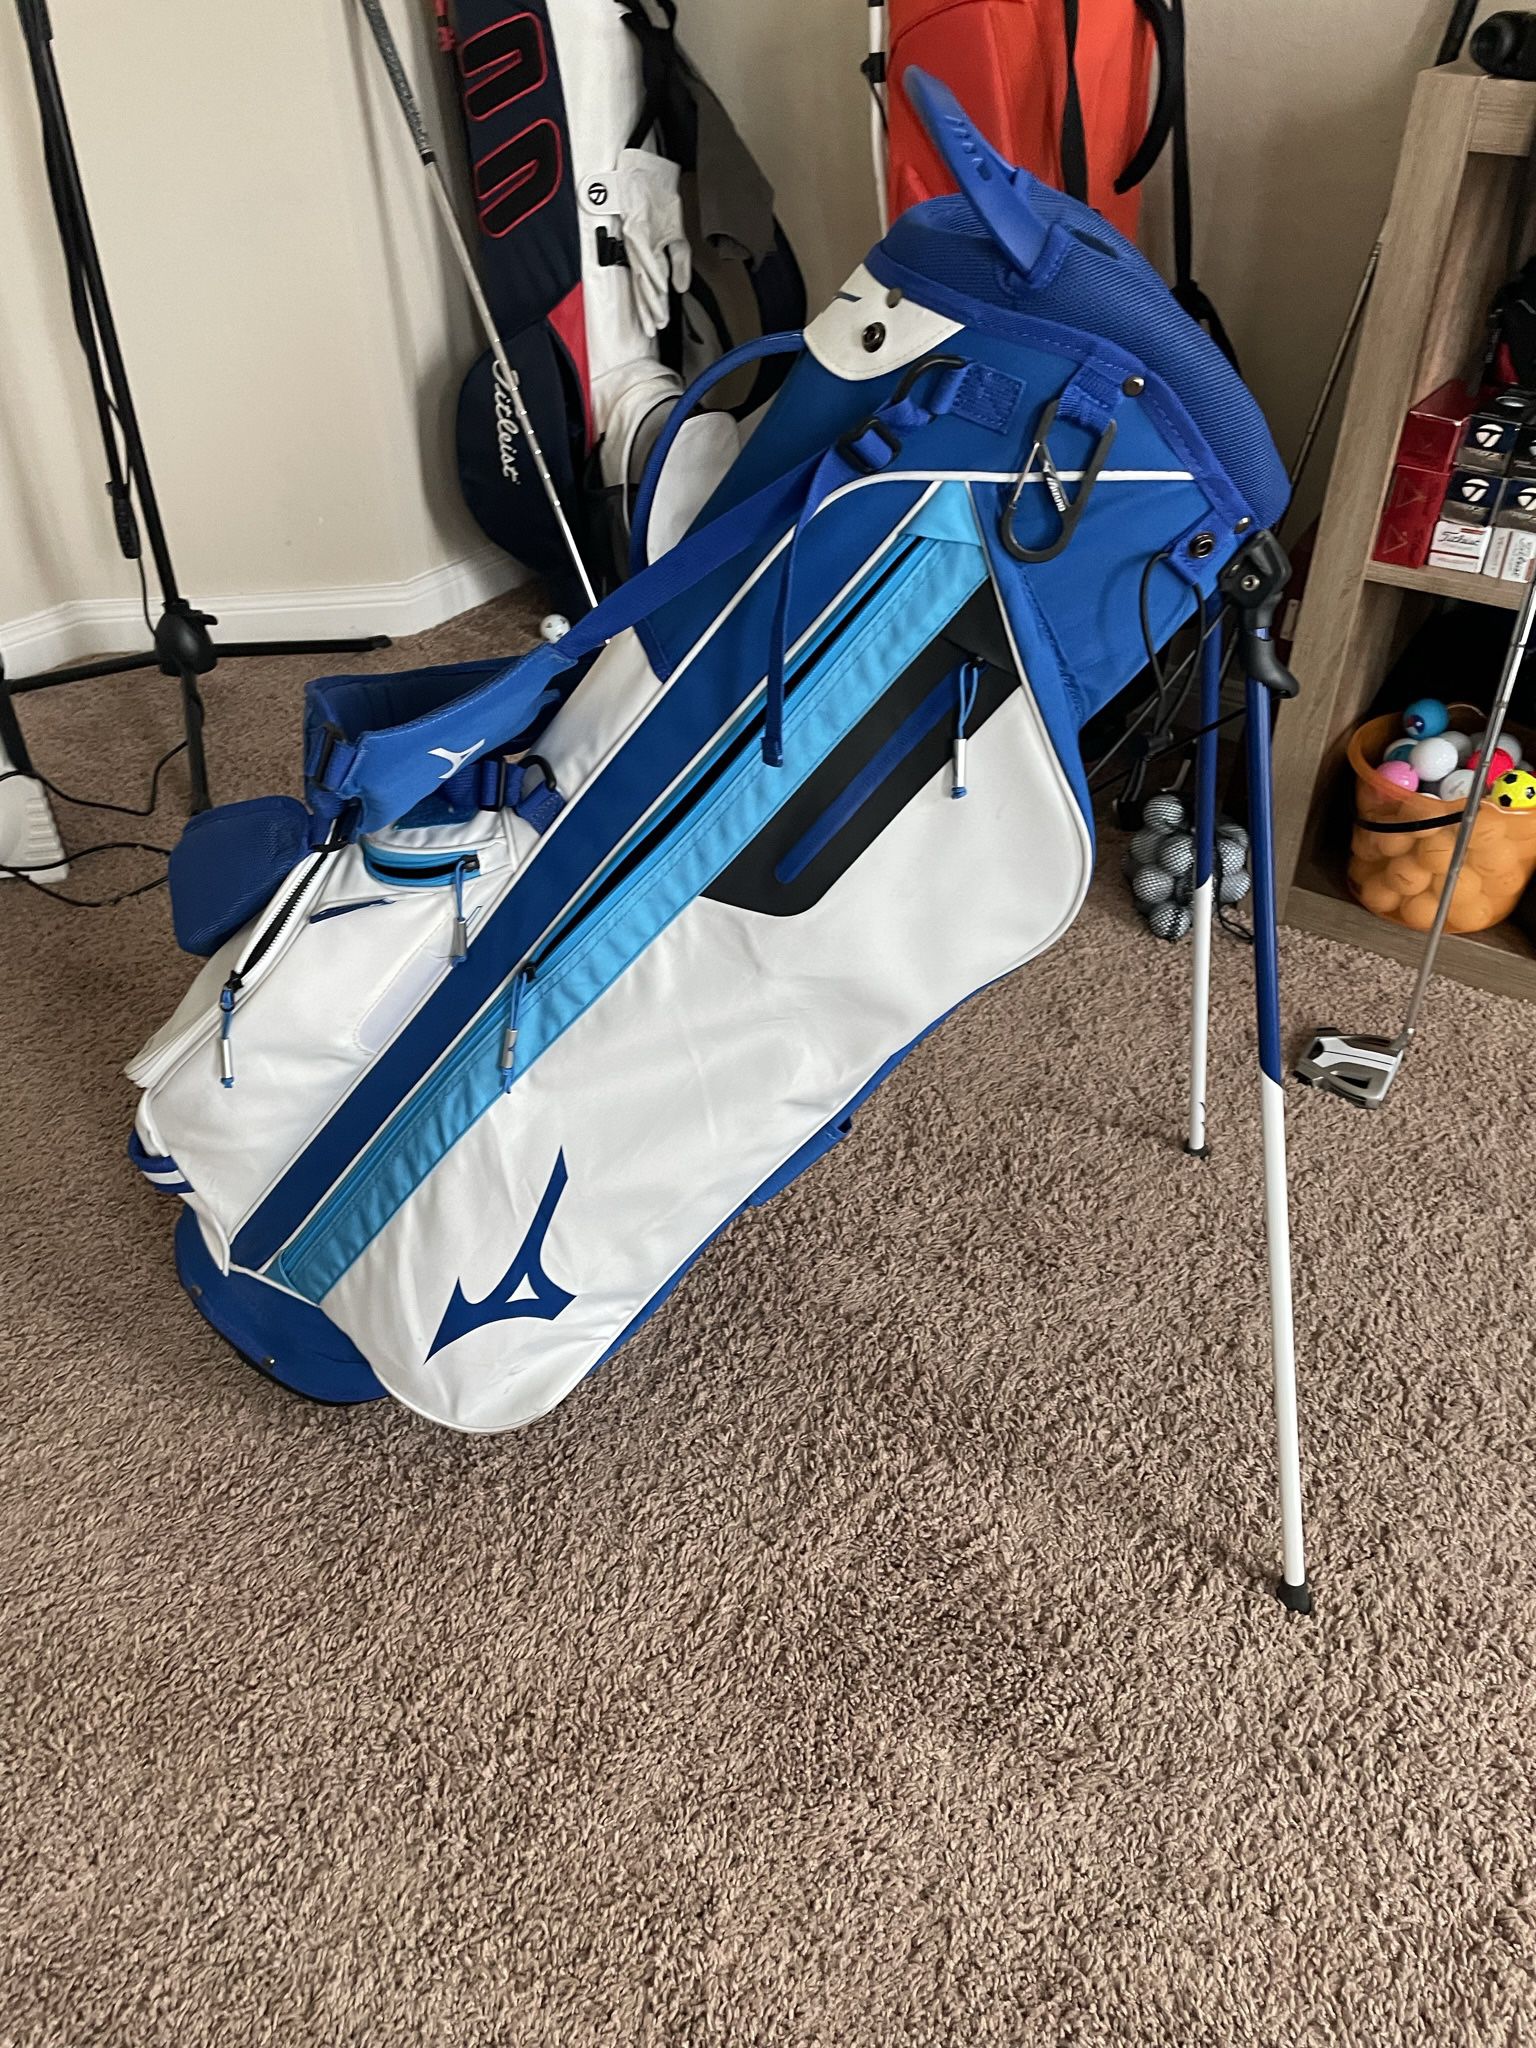 Mizuno Golf Bag